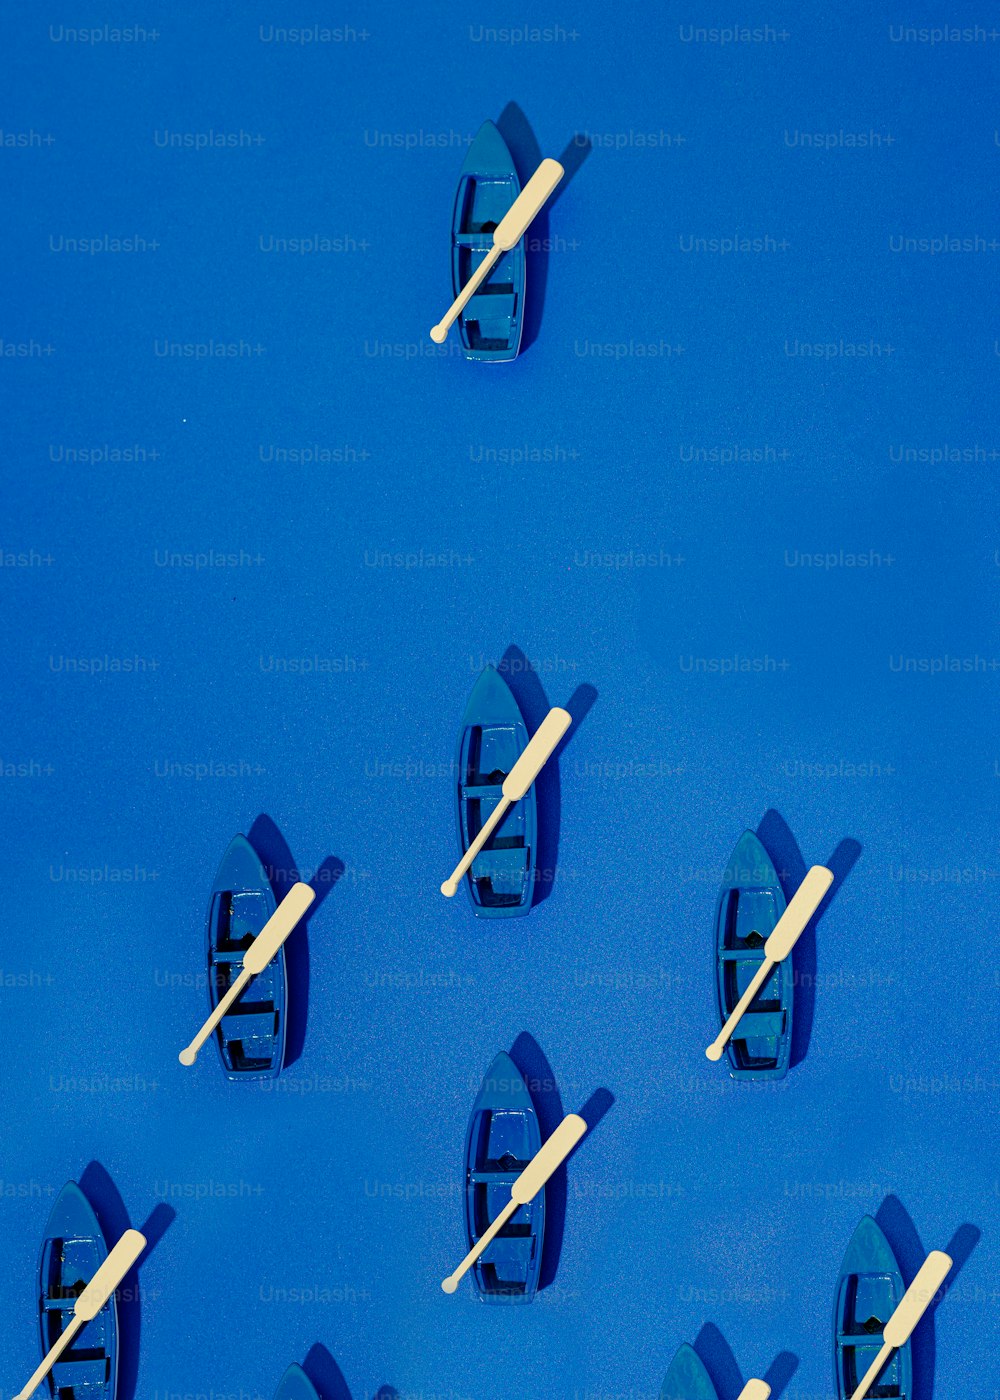 Un gruppo di piccole imbarcazioni galleggianti sulla cima di una superficie blu